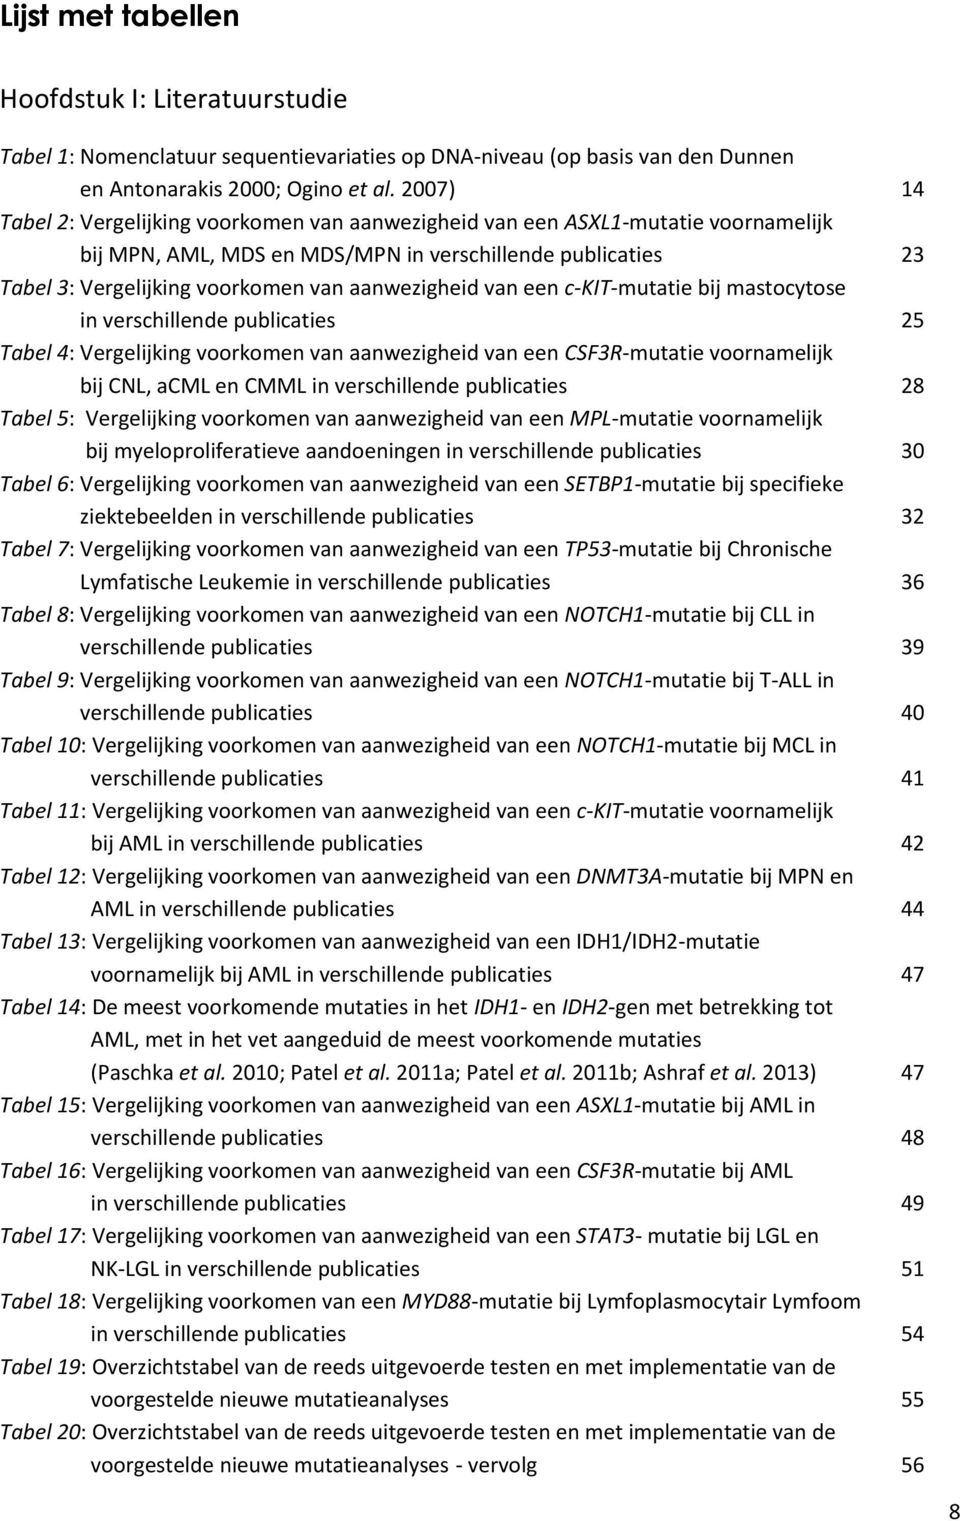 een c-kit-mutatie bij mastocytose in verschillende publicaties 25 Tabel 4: Vergelijking voorkomen van aanwezigheid van een CSF3R-mutatie voornamelijk bij CNL, acml en CMML in verschillende